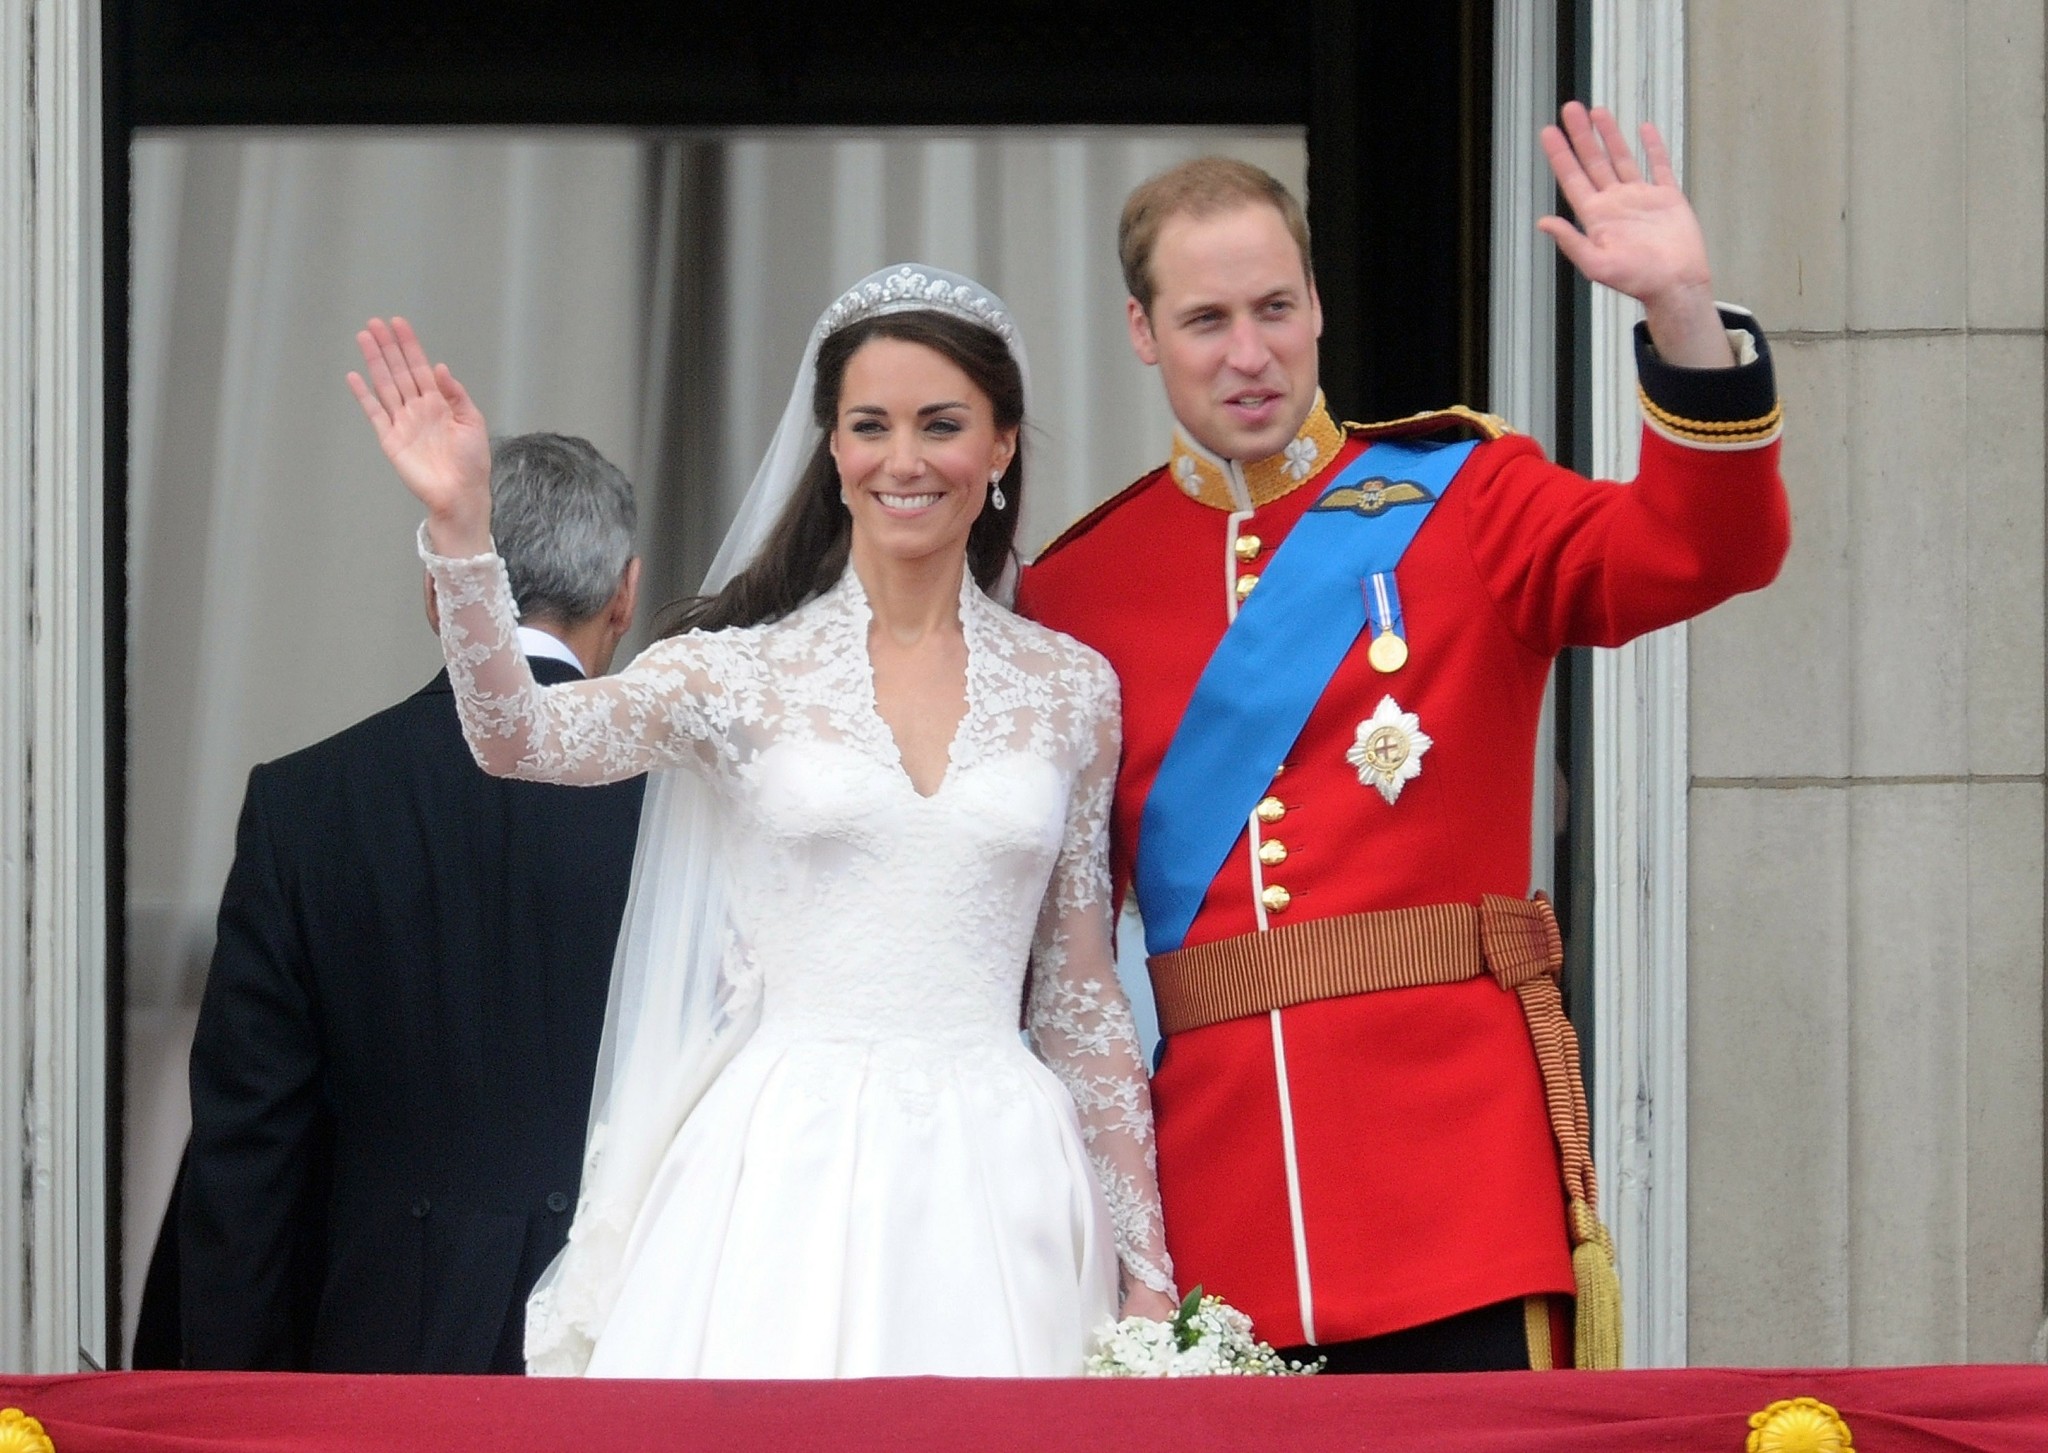 Οι εκθαμβωτικές τιάρες αμύθητης αξίας που φορούν οι γυναίκες της Βρετανικής βασιλικής οικογένειας